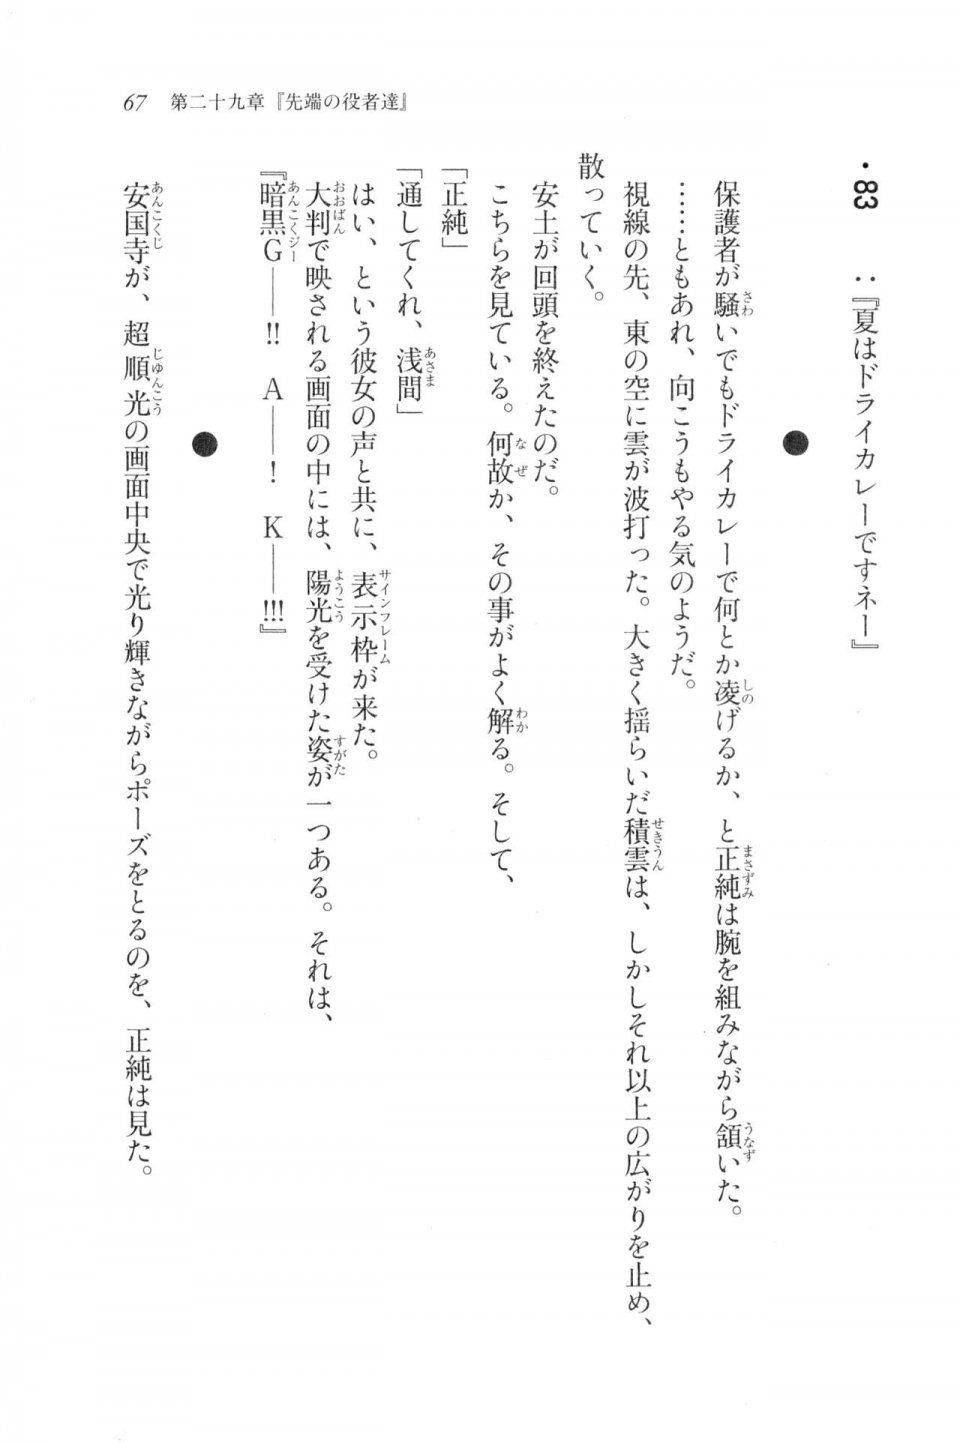 Kyoukai Senjou no Horizon LN Vol 20(8B) - Photo #67